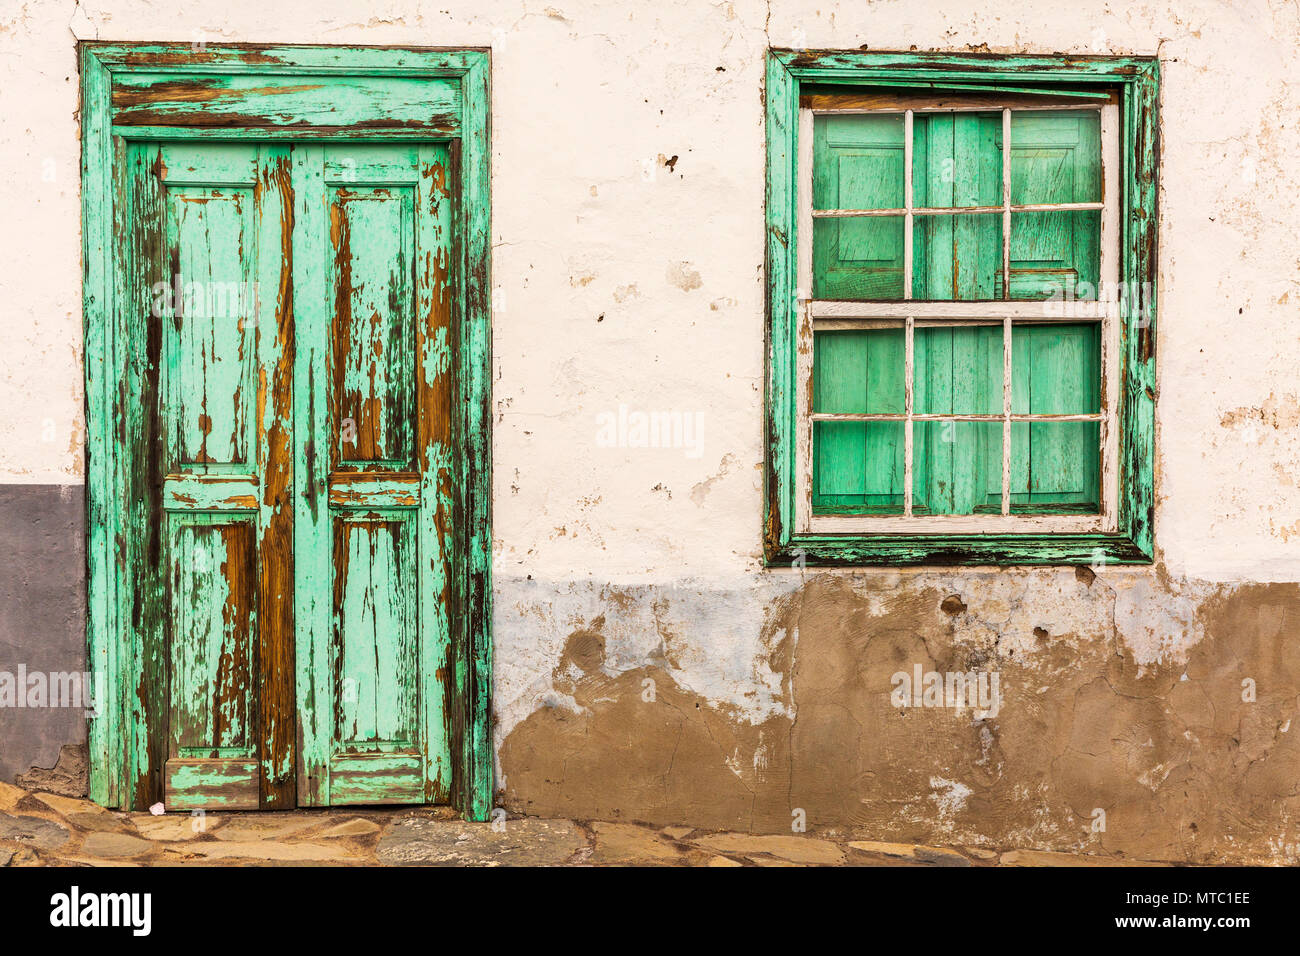 Abstract i dettagli di vecchie porte in legno e finestre, trascurato con peeling di verniciatura e il vetro rotto, Vilaflor, Isole Canarie, Spagna, Foto Stock